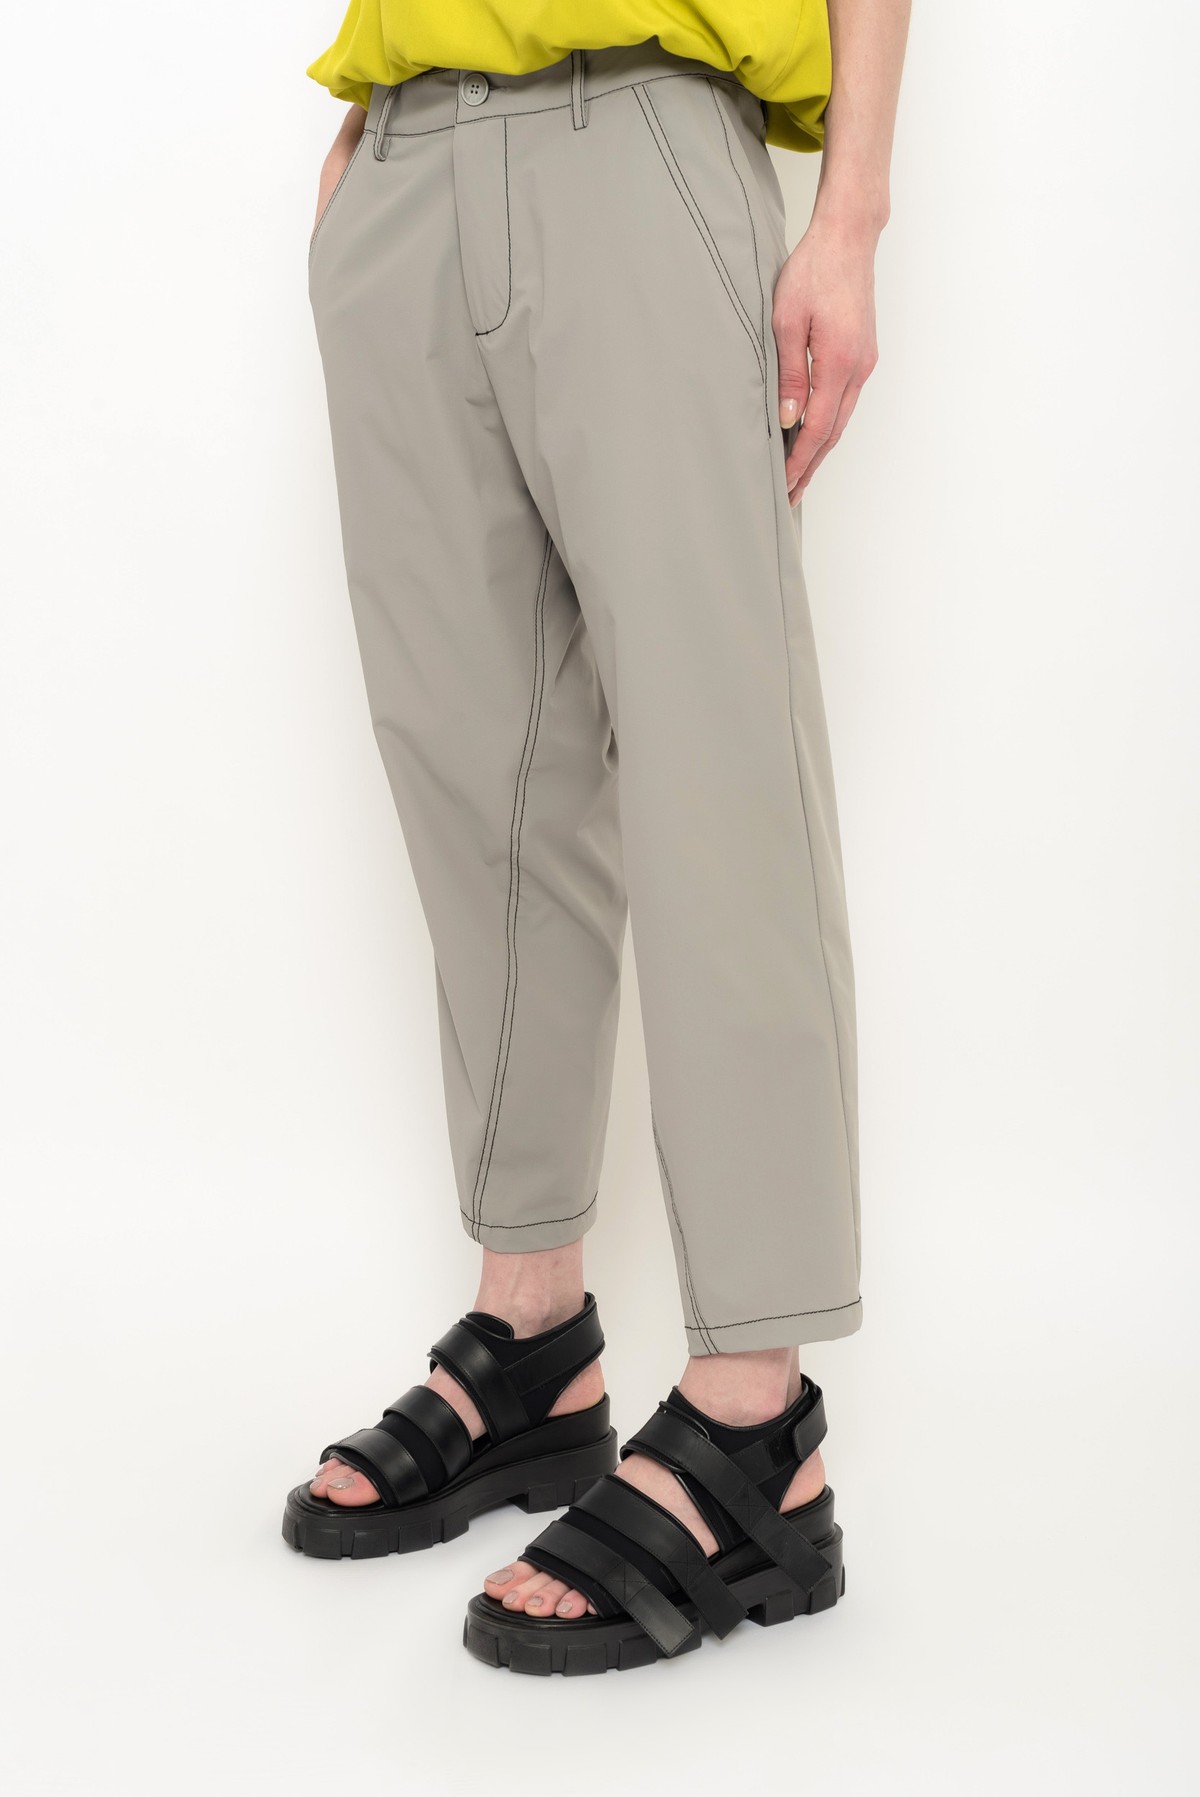 calça estilo alfaiataria em nylon com elastano